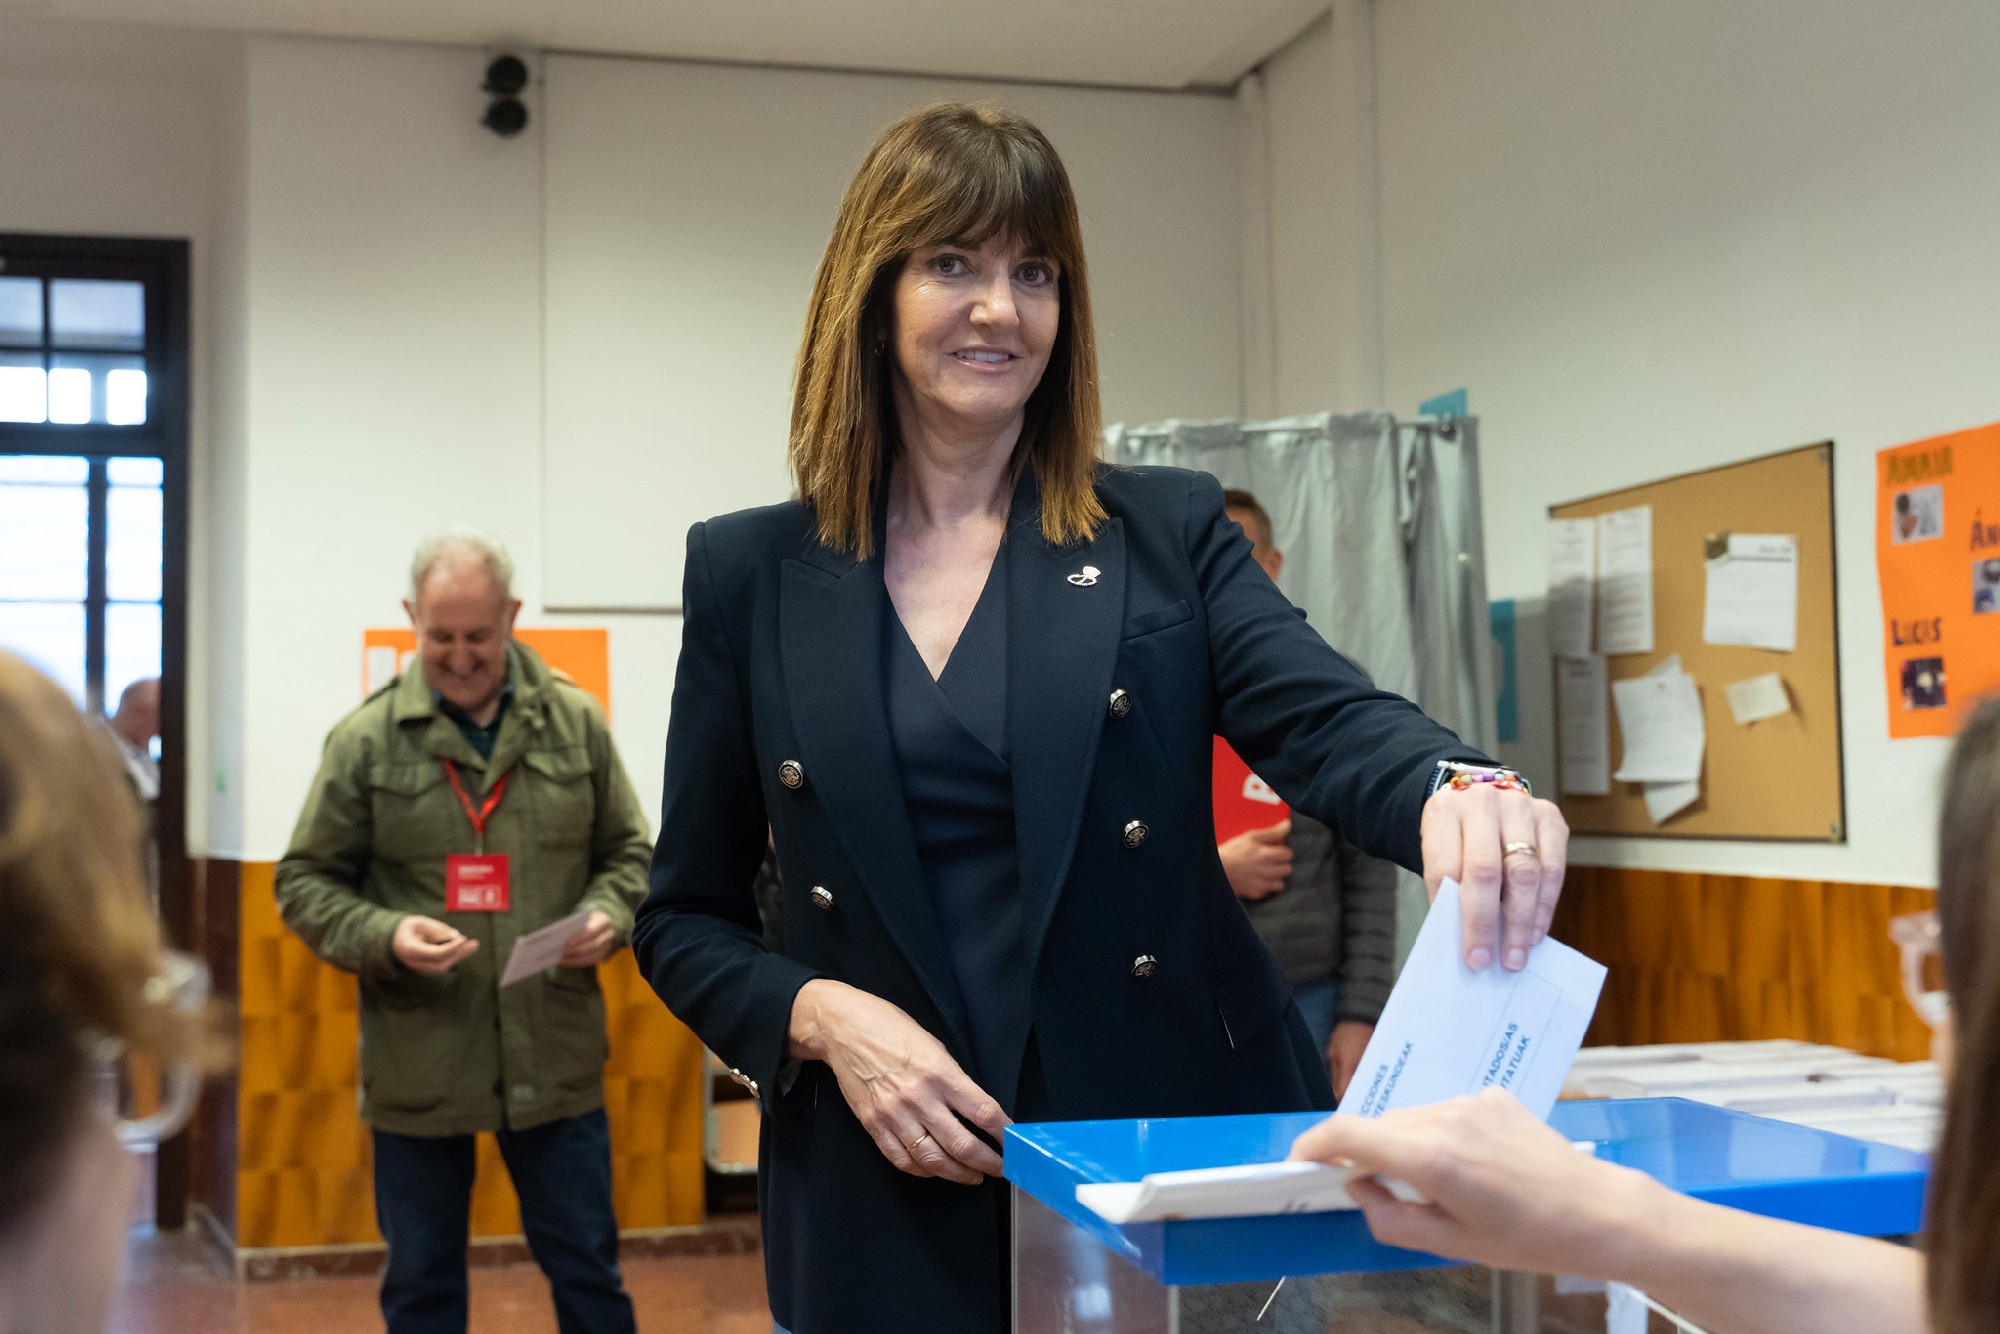 La candidata socialista vasca a las próximas elecciones europeas, Idoia Mendia, votando en su colegio electoral de Bilbao | Foto: Socialistas Vascos